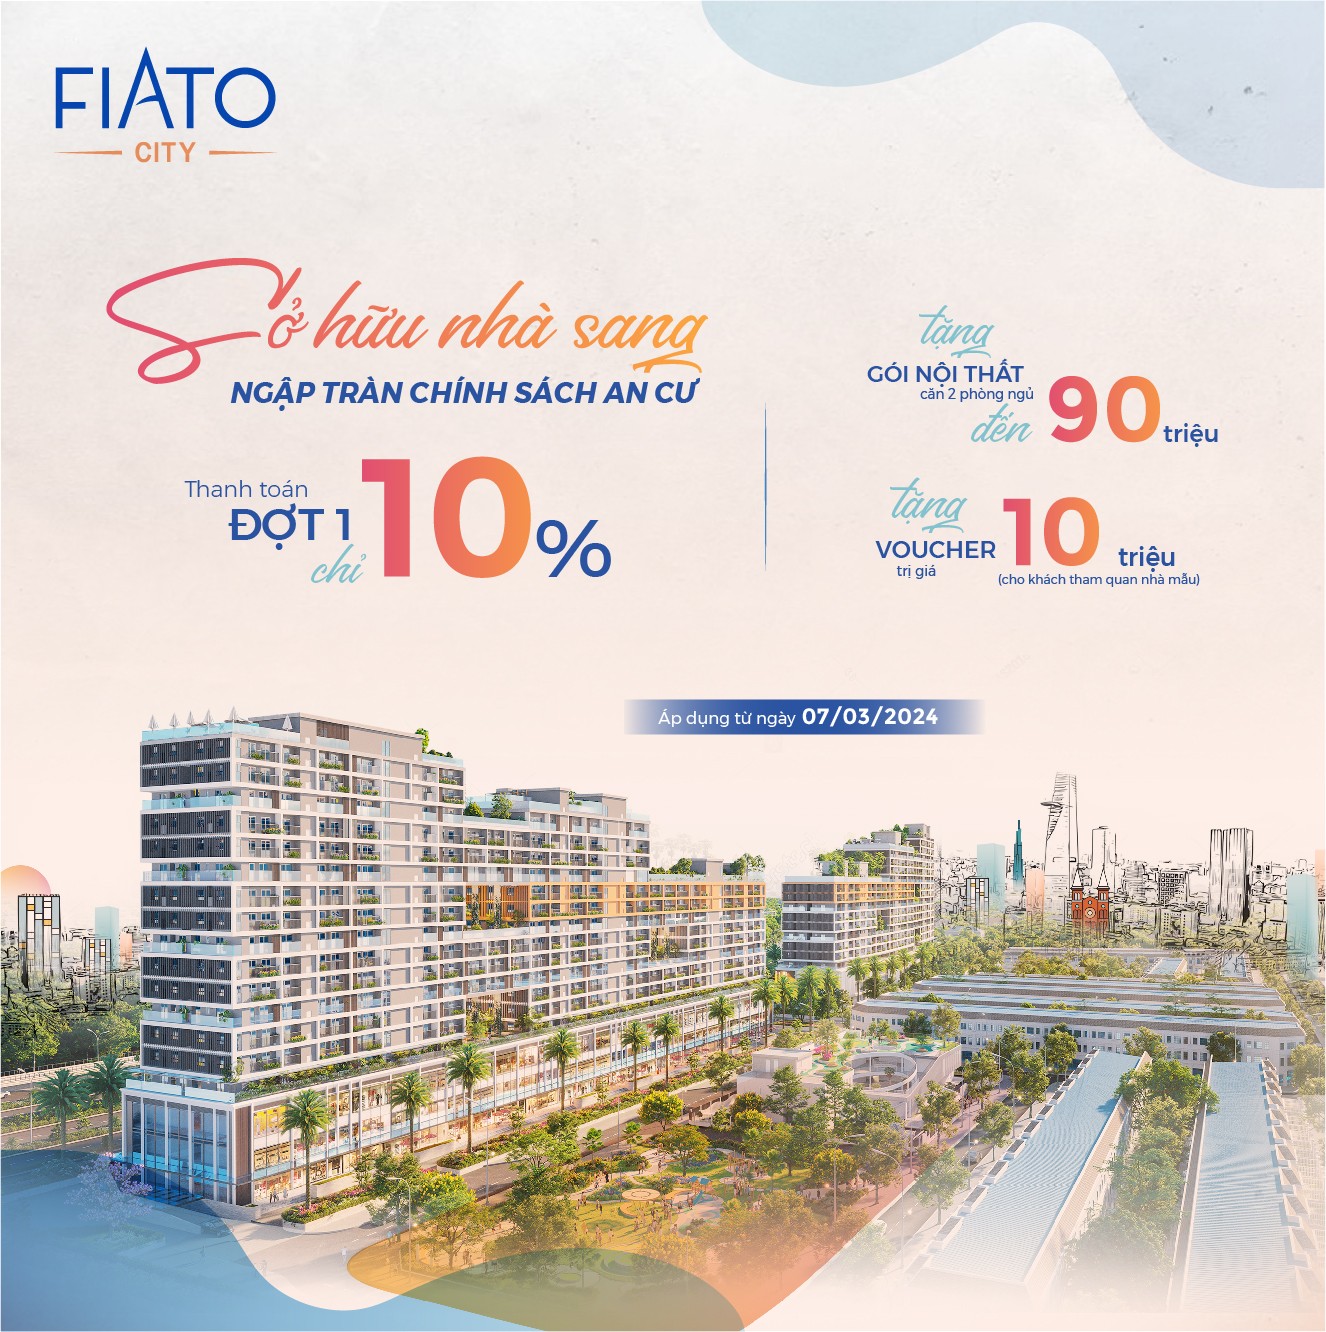 Nắm bắt cơ hội đầu tư căn hộ gần sân bay Long Thành chỉ 9tr/tháng, chi tiết liên hệ: 0973899353 3